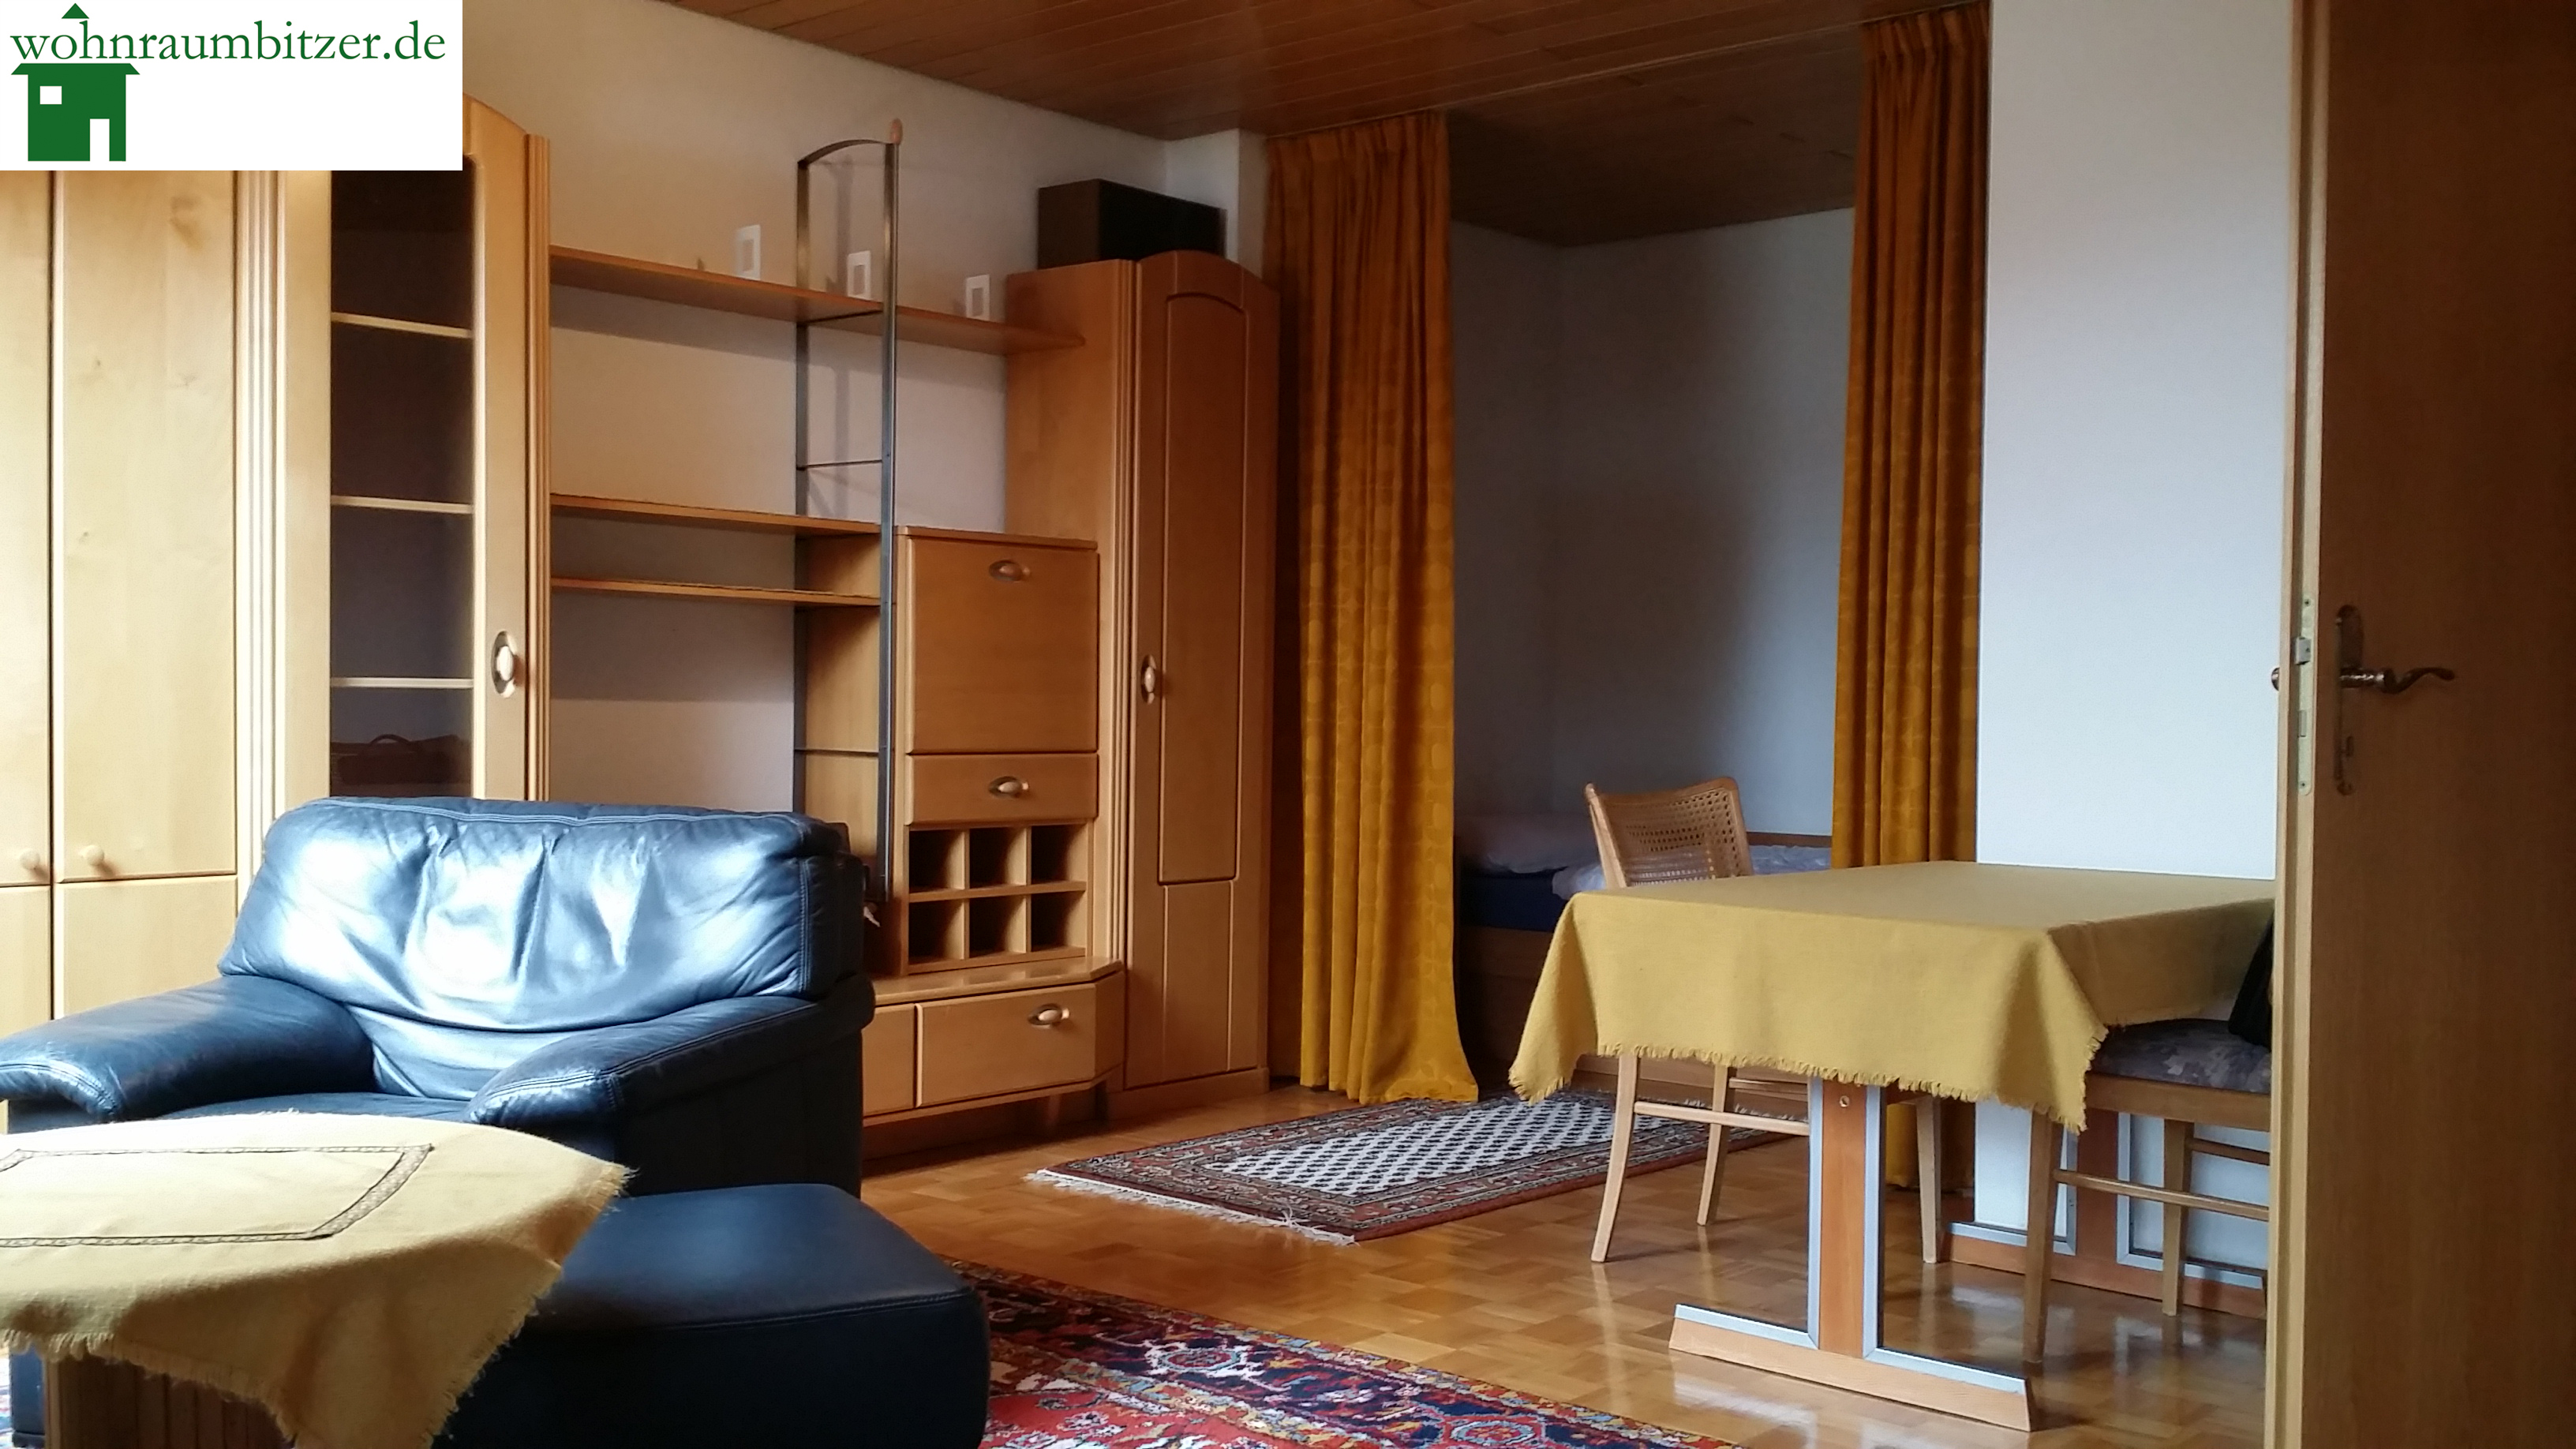 Komplett möblierte 1-Zimmer-Wohnung mit EBK in Schulnähe